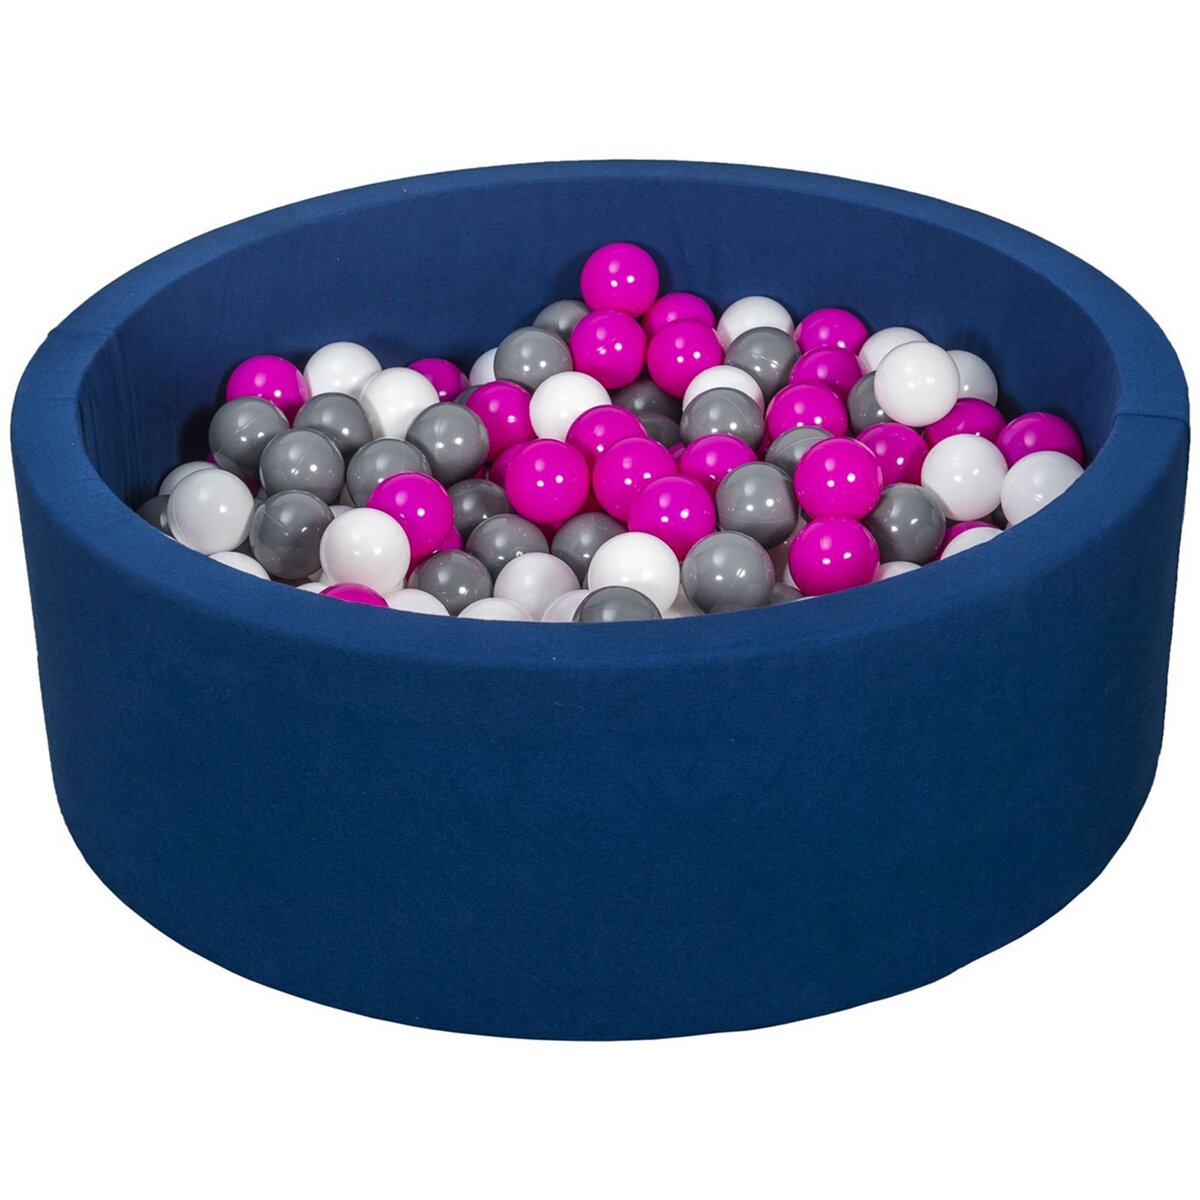  Piscine à balles Aire de jeu + 200 balles bleu marine blanc,rose,gris